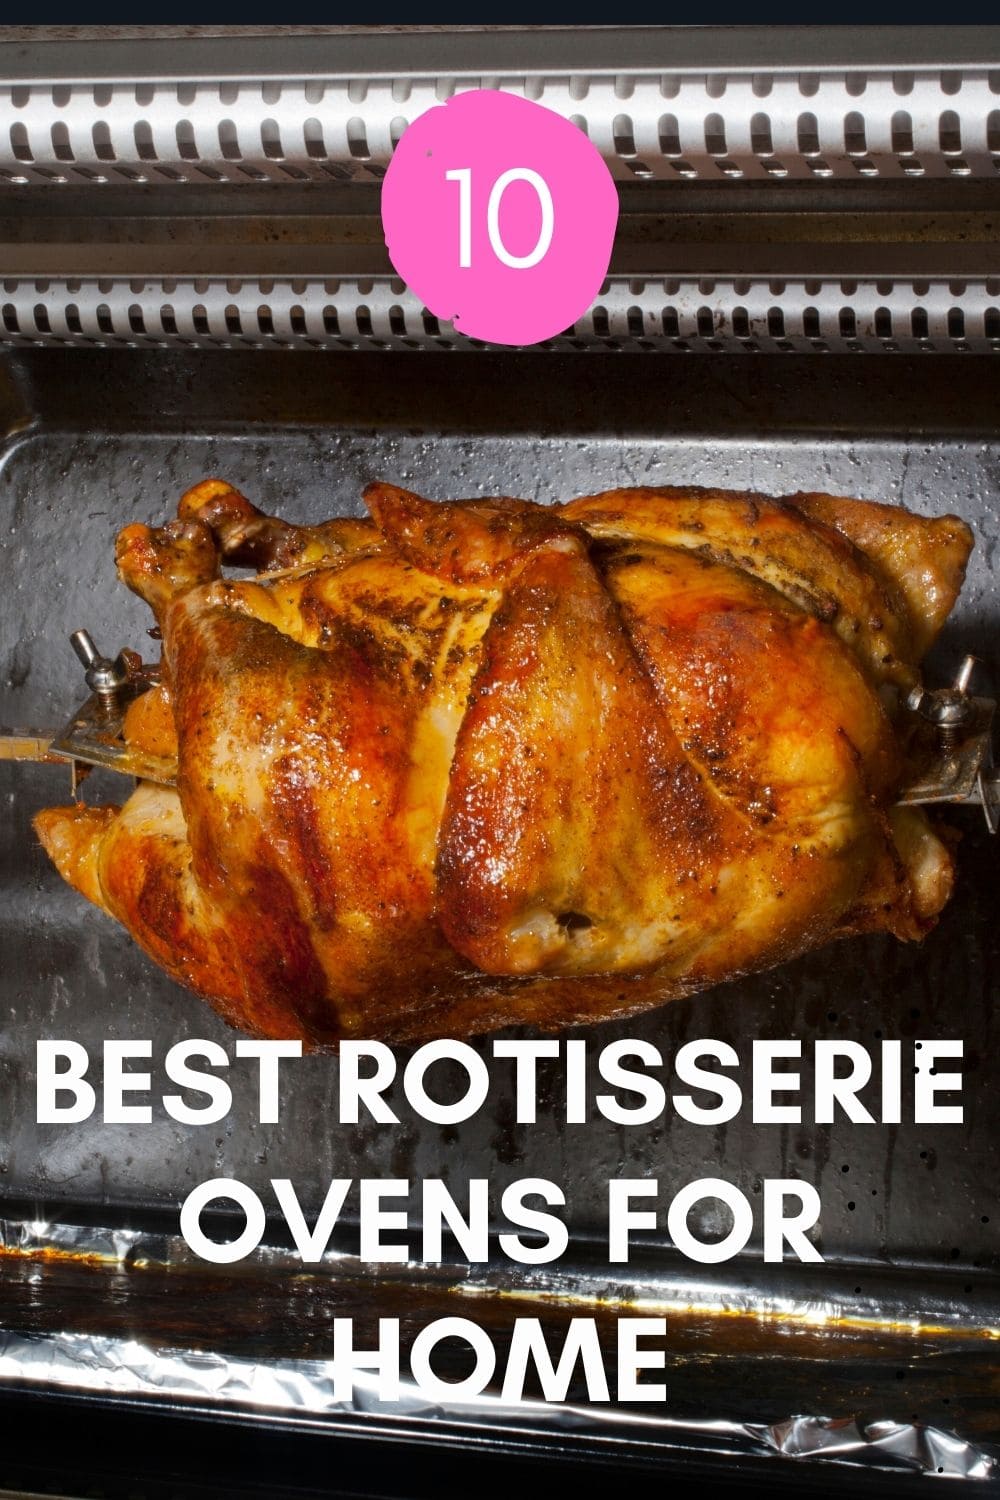 Best Rotisserie Ovens